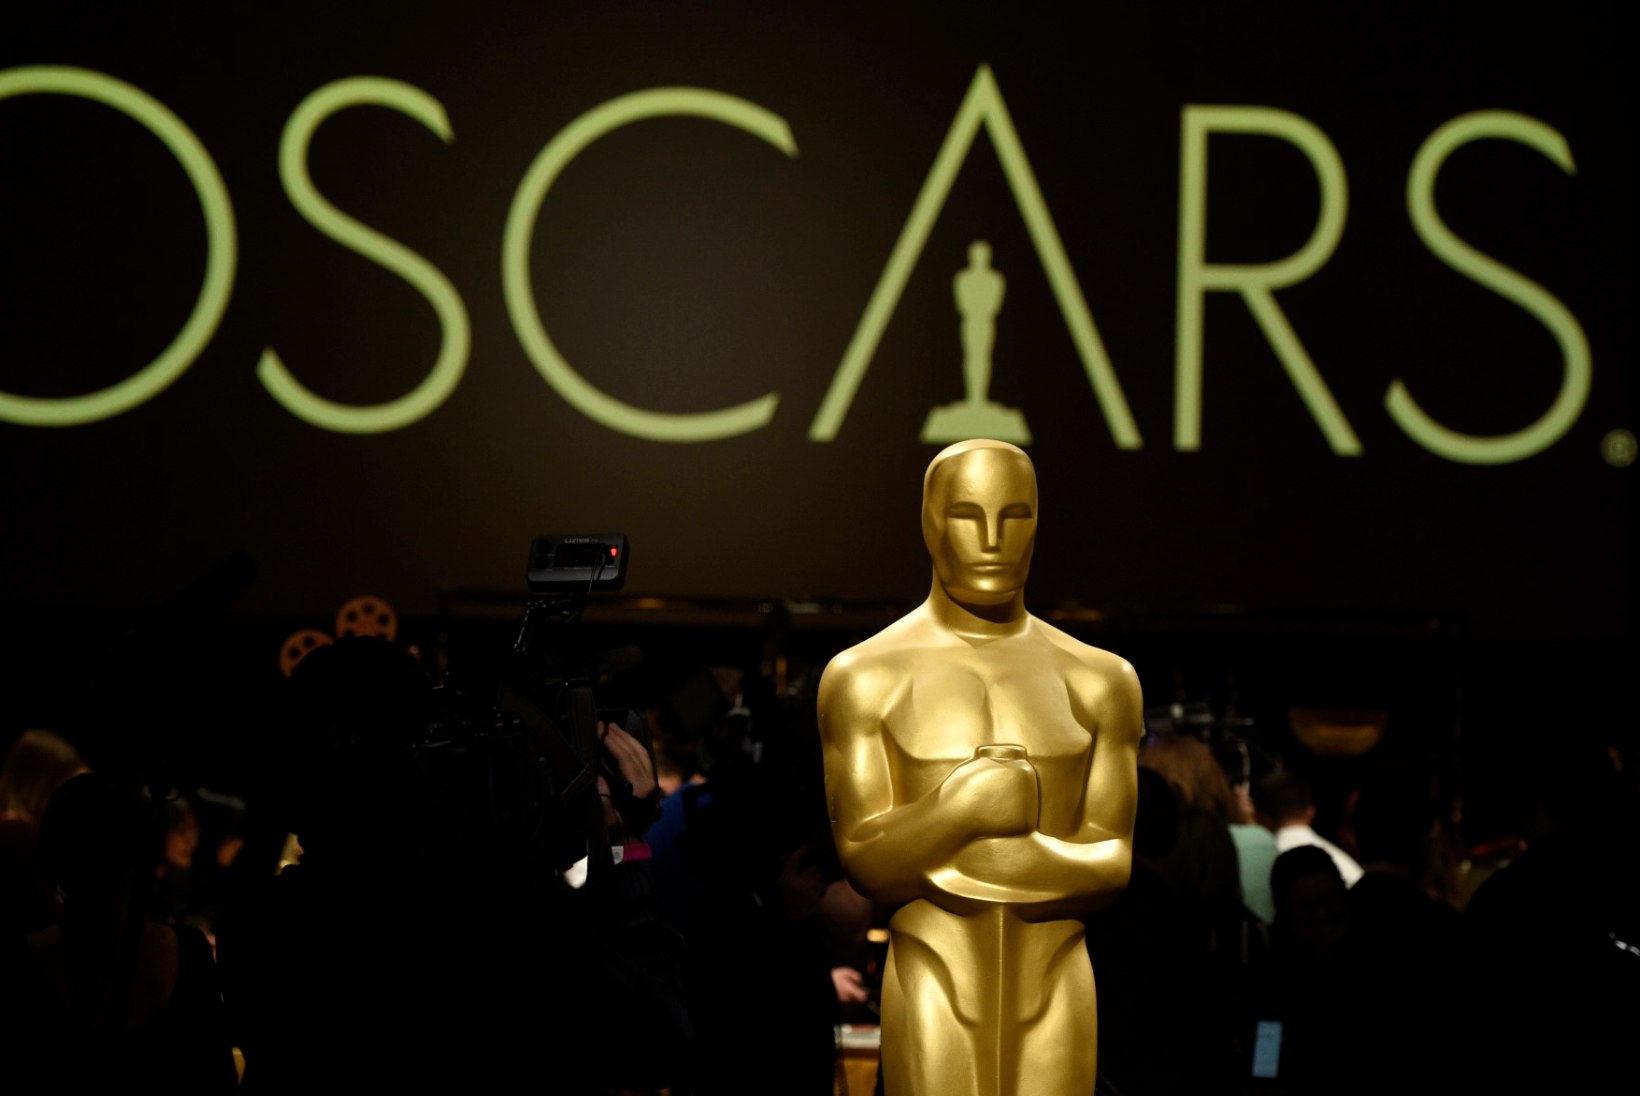 Oscarite gala toimub taas kord ilma õhtujuhita